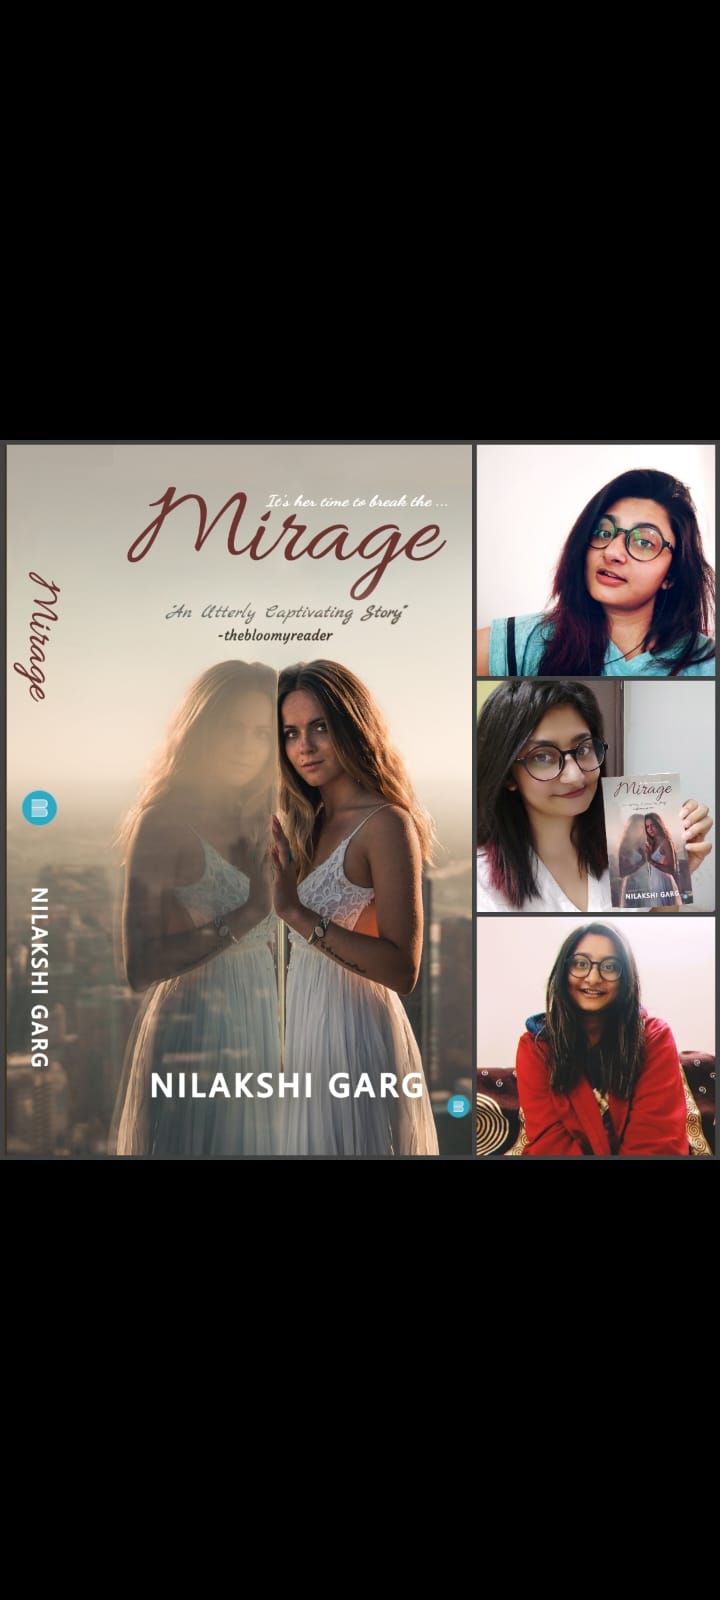 Author Nilakshi Garg